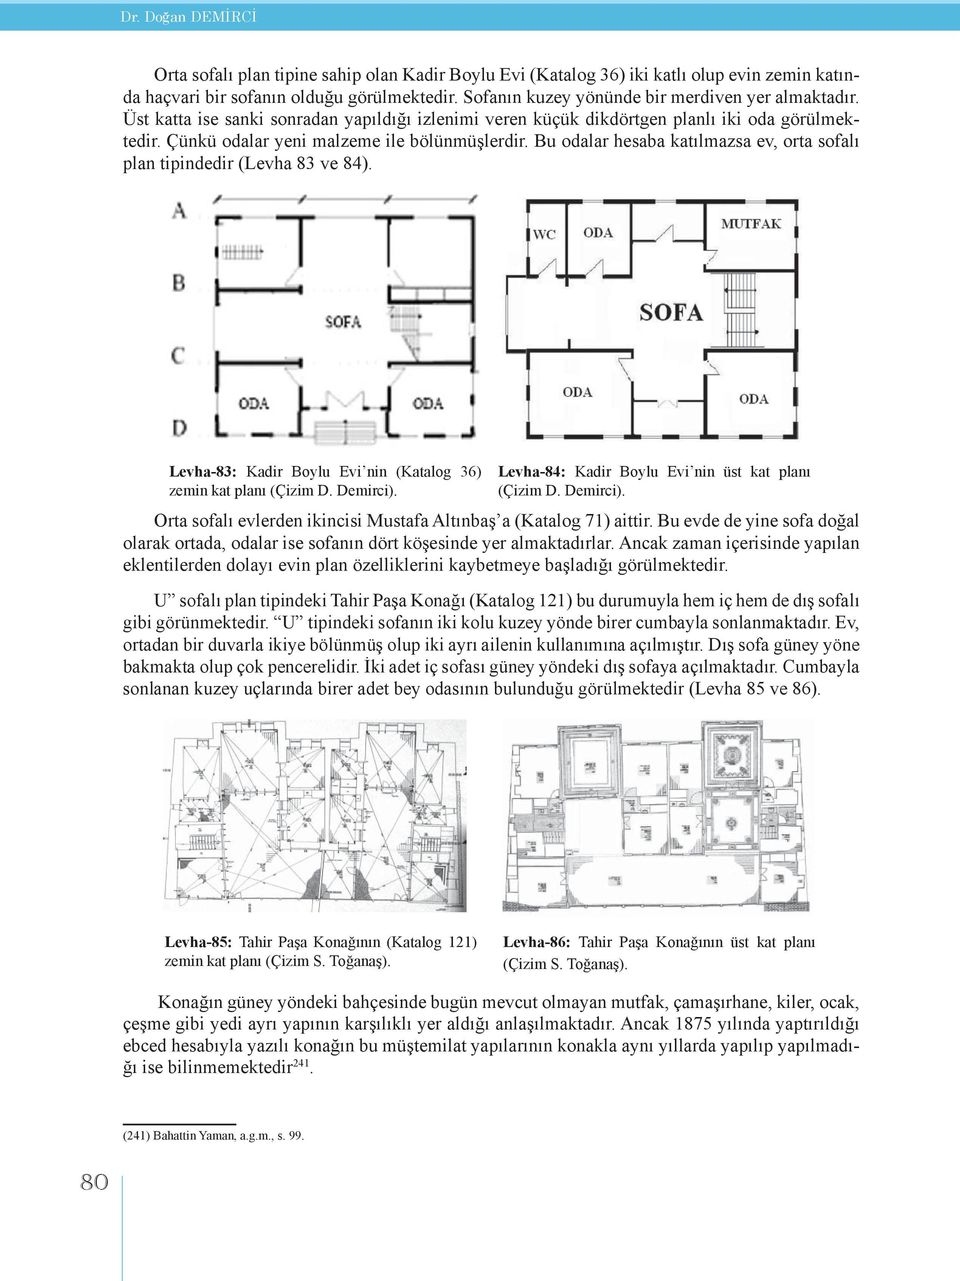 Bu odalar hesaba katılmazsa ev, orta sofalı plan tipindedir (Levha 83 ve 84). Levha-83: Kadir Boylu Evi nin (Katalog 36) zemin kat planı (Çizim D. Demirci).